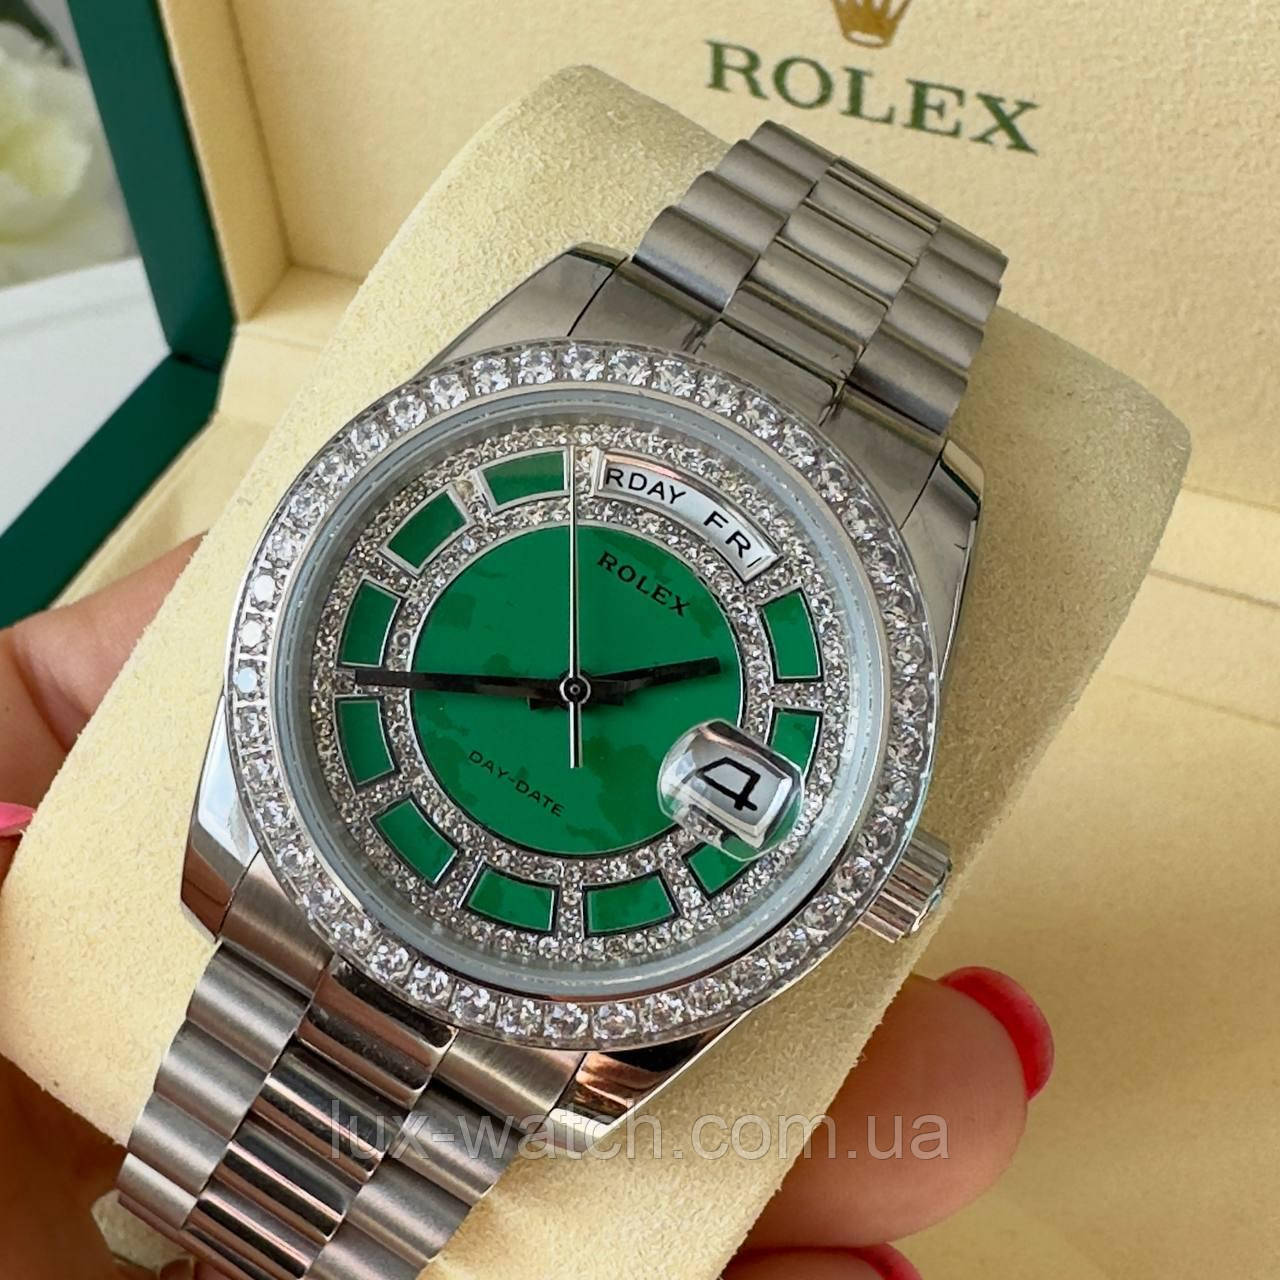 Стильний наручний годинник Rolex 36 mm Day — Date Silver Green Diamond